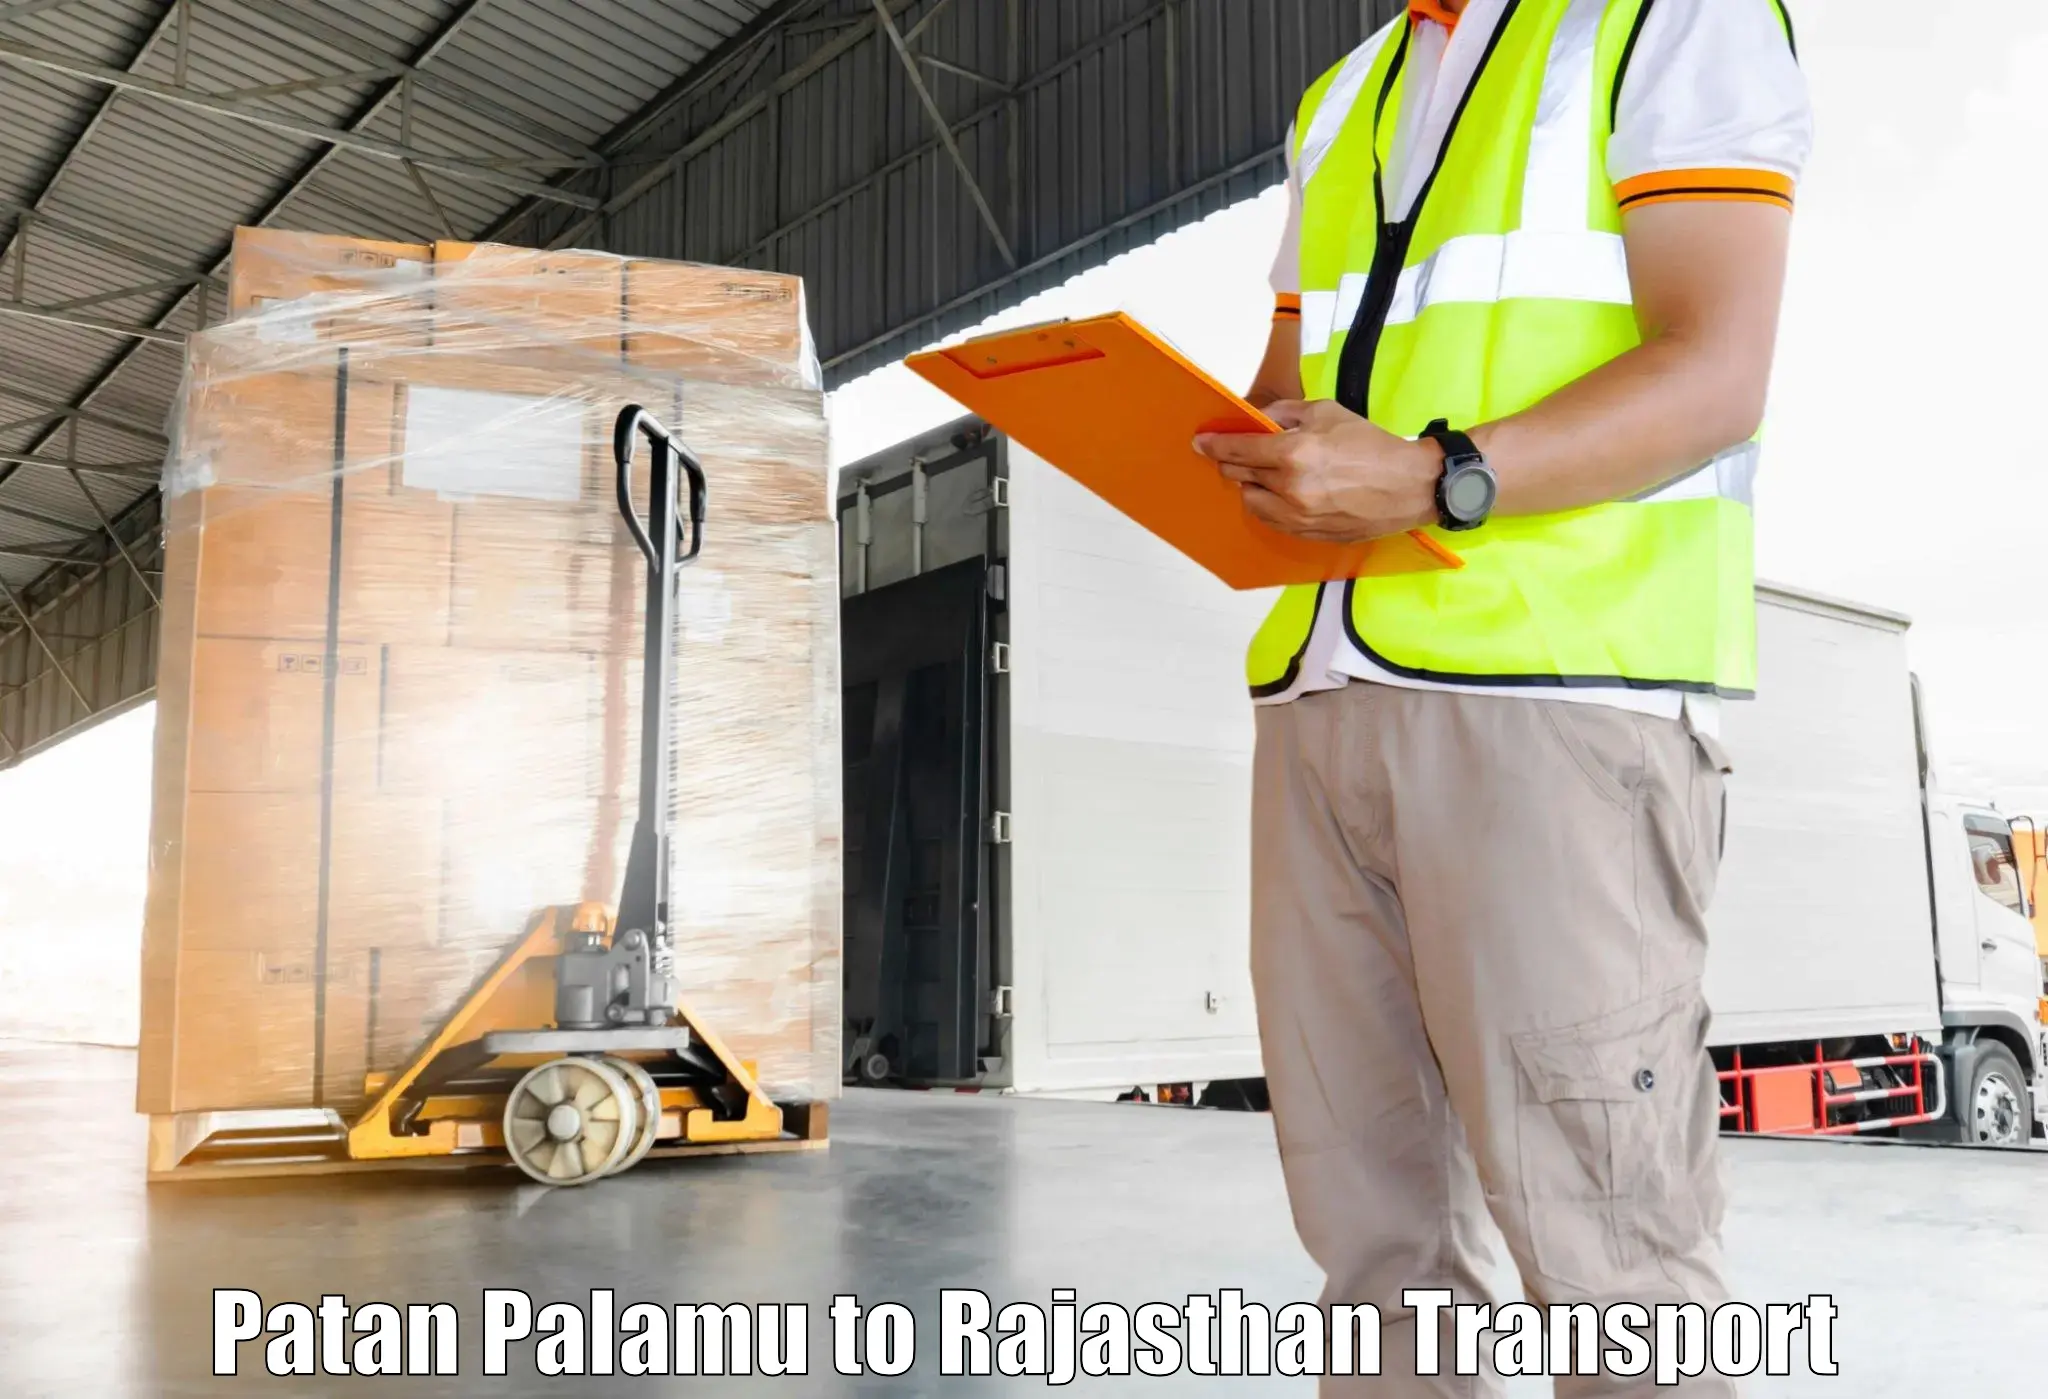 Interstate transport services Patan Palamu to Kapasan